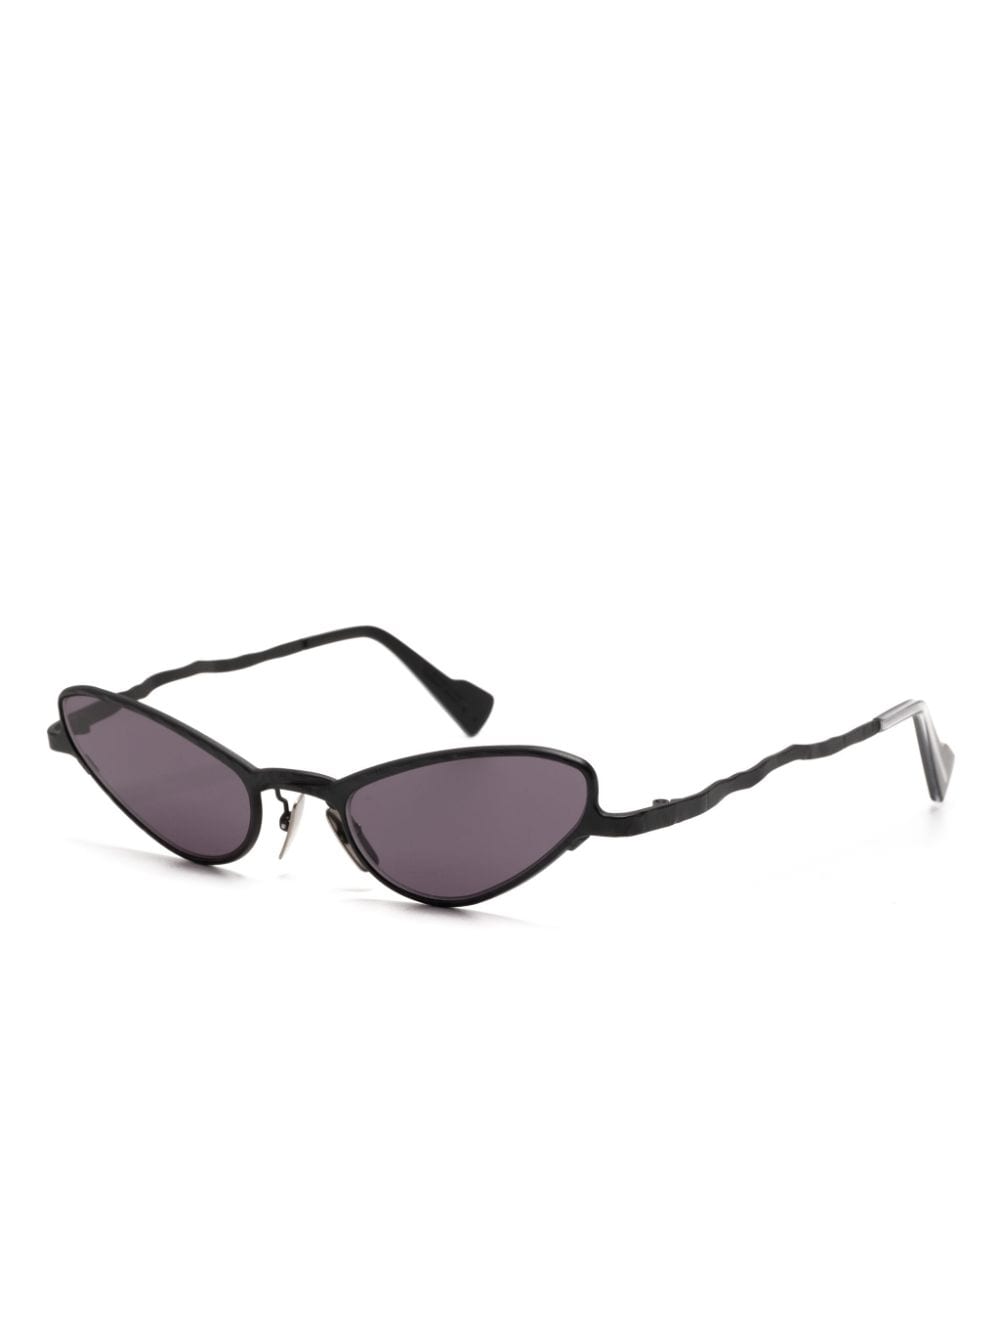 Kuboraum Z22 cat-eye sunglasses - Zwart